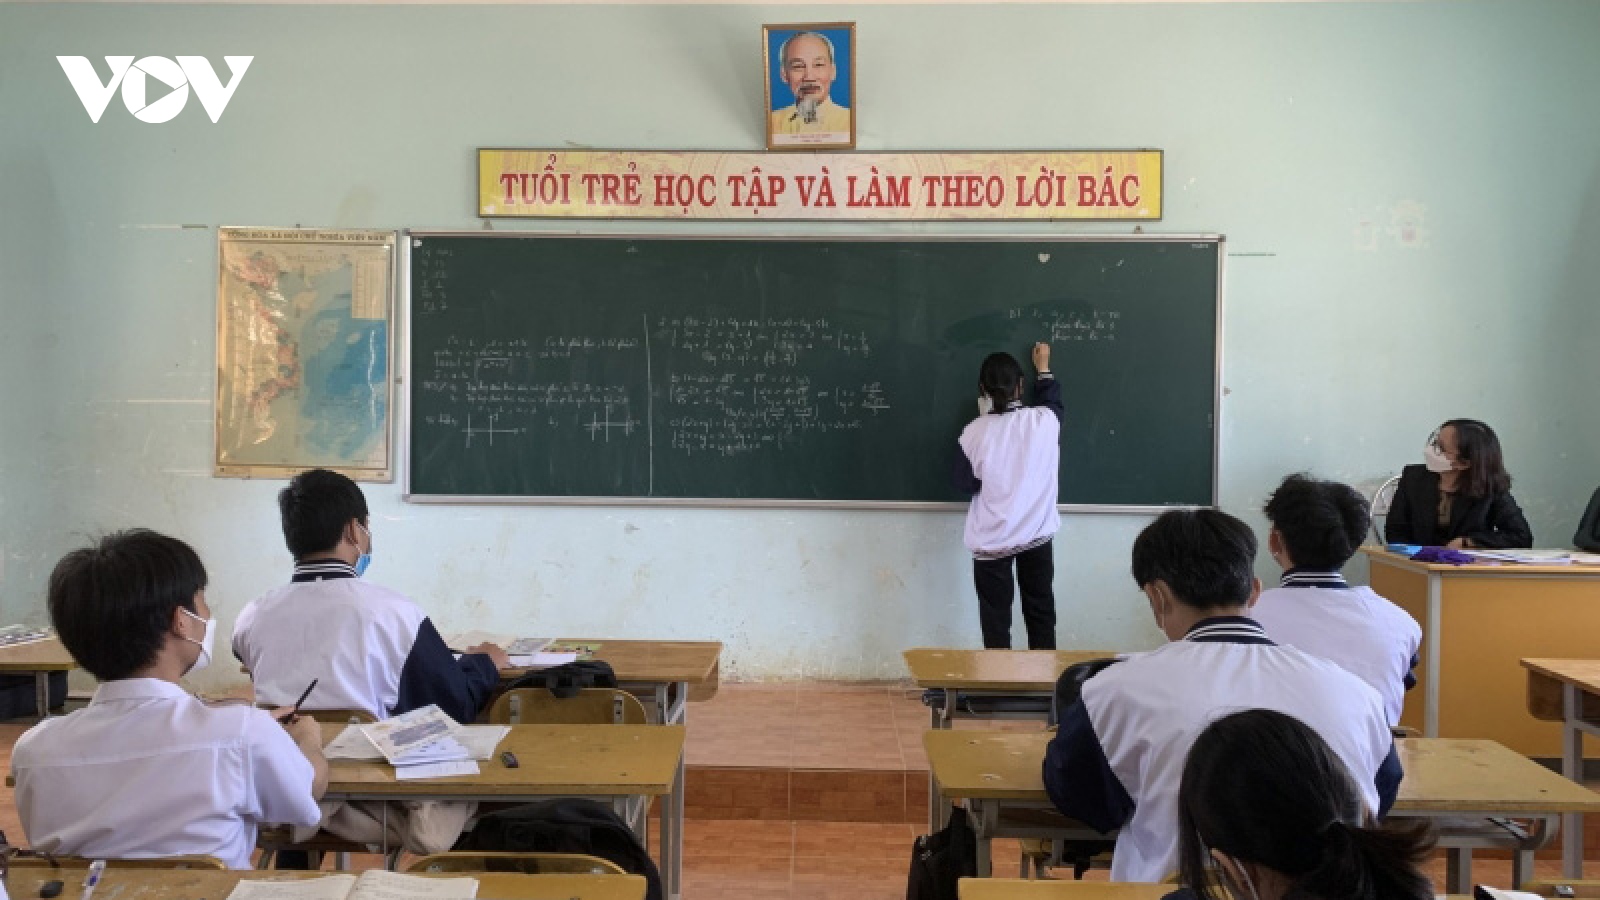 Đắk Lắk chủ động ôn thi thi tốt nghiệp THPT cho học sinh cuối cấp